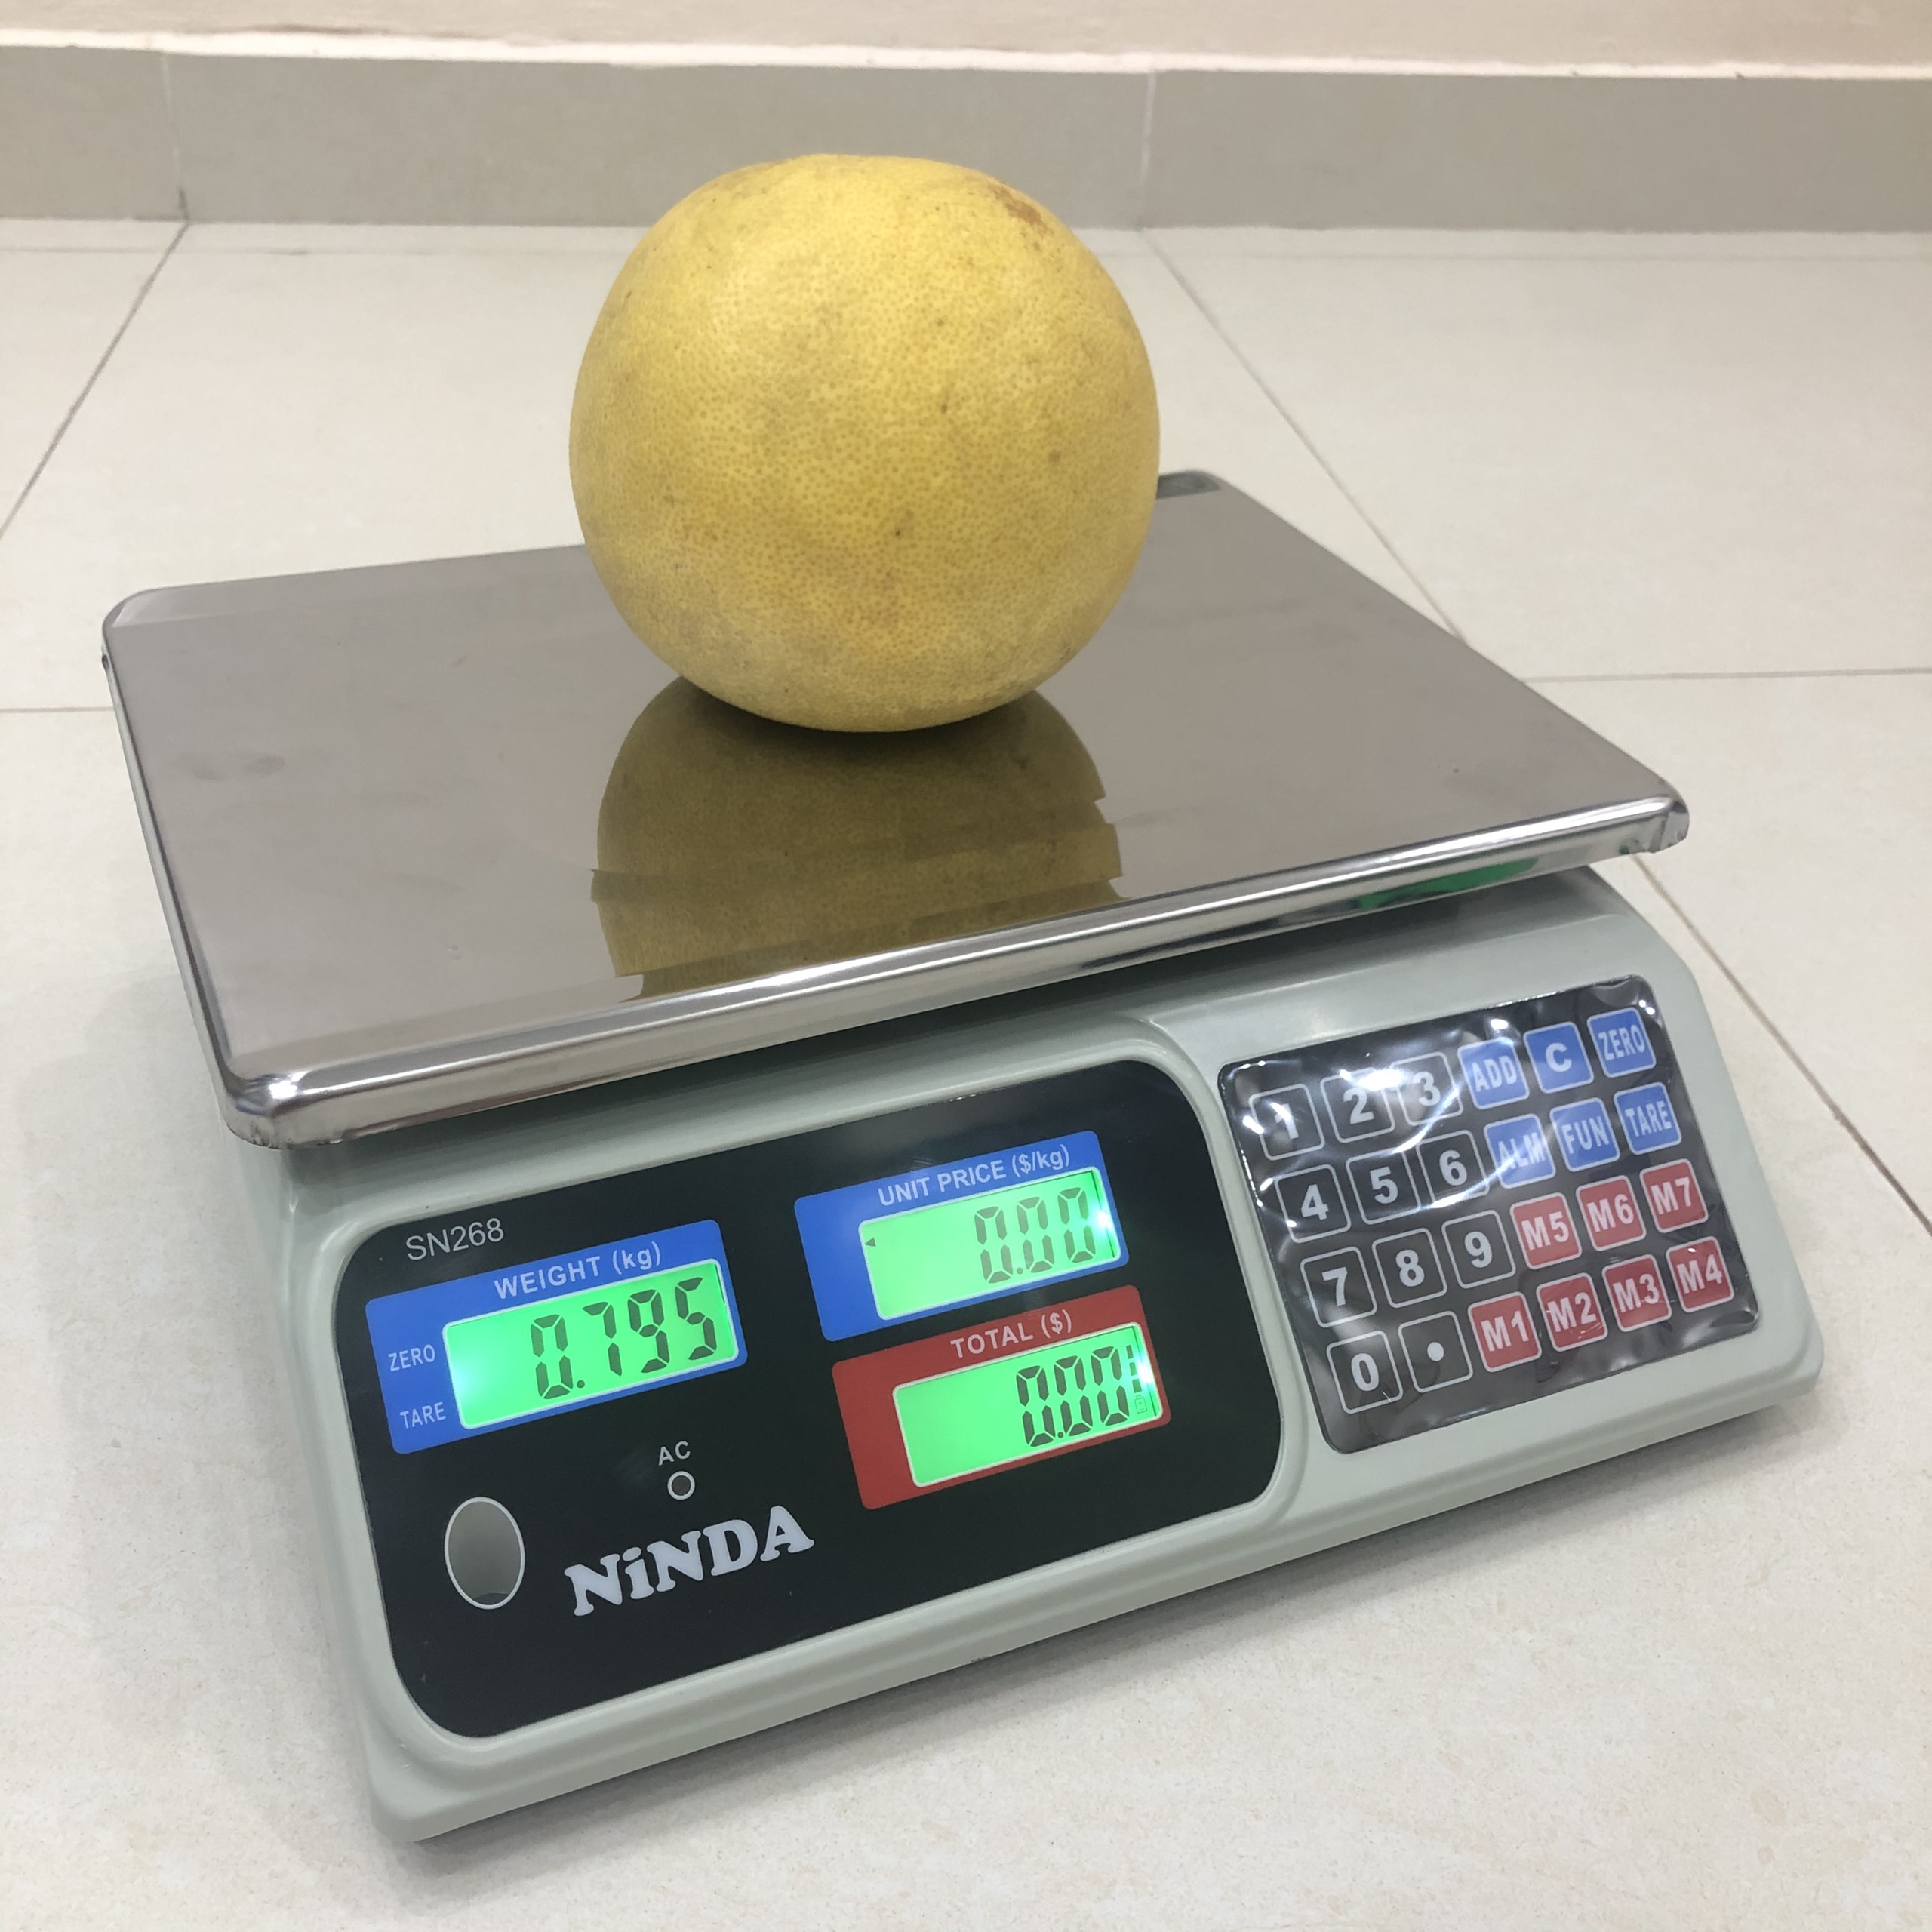 Cân điện tử 30kg Ninda, cân tính giá hoa quả thực phẩm sử dụng cho chuỗi siêu thị, cửa hàng trái cây, rau quả, thủy hải sản